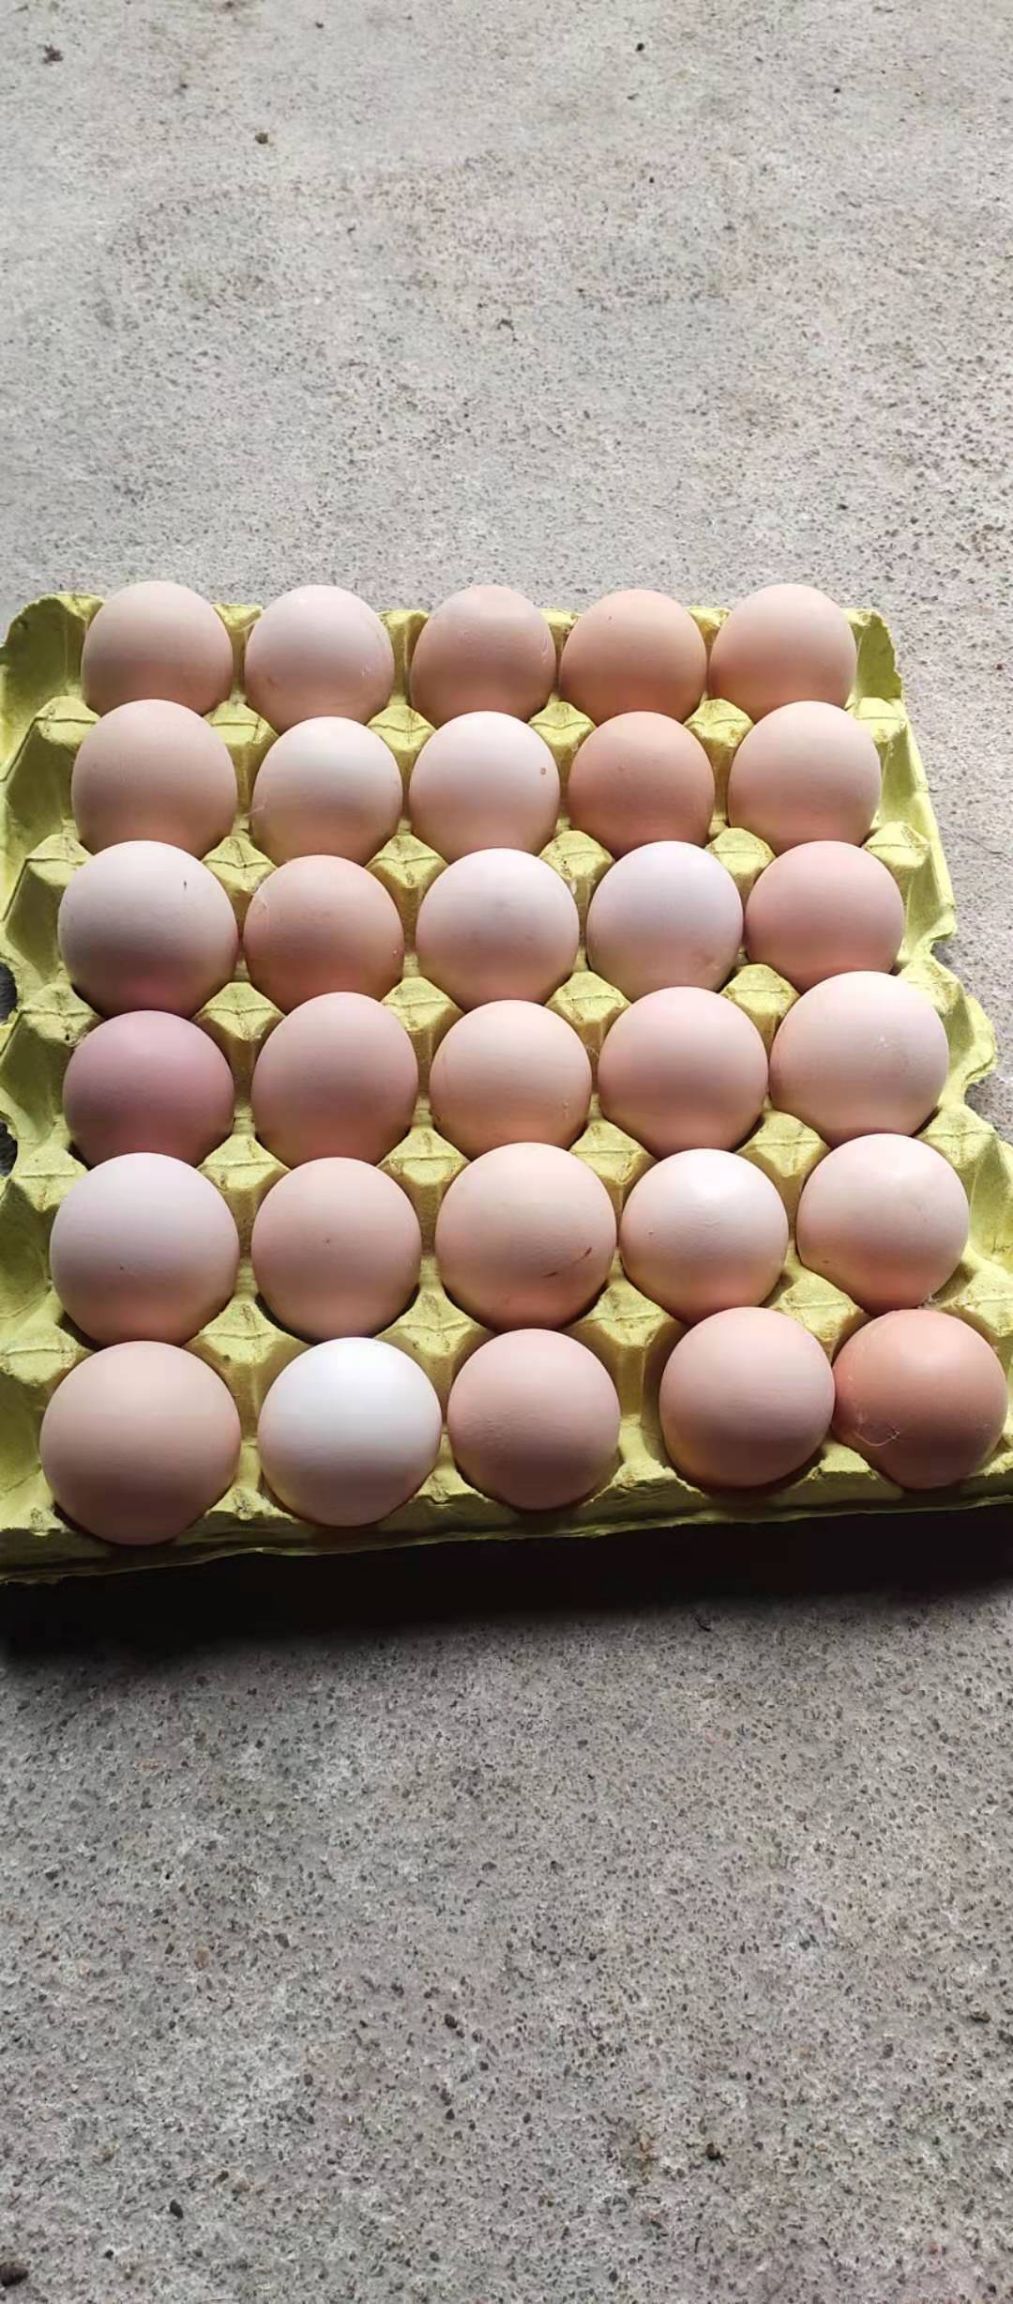 固始县普通鸡蛋 食用 箱装